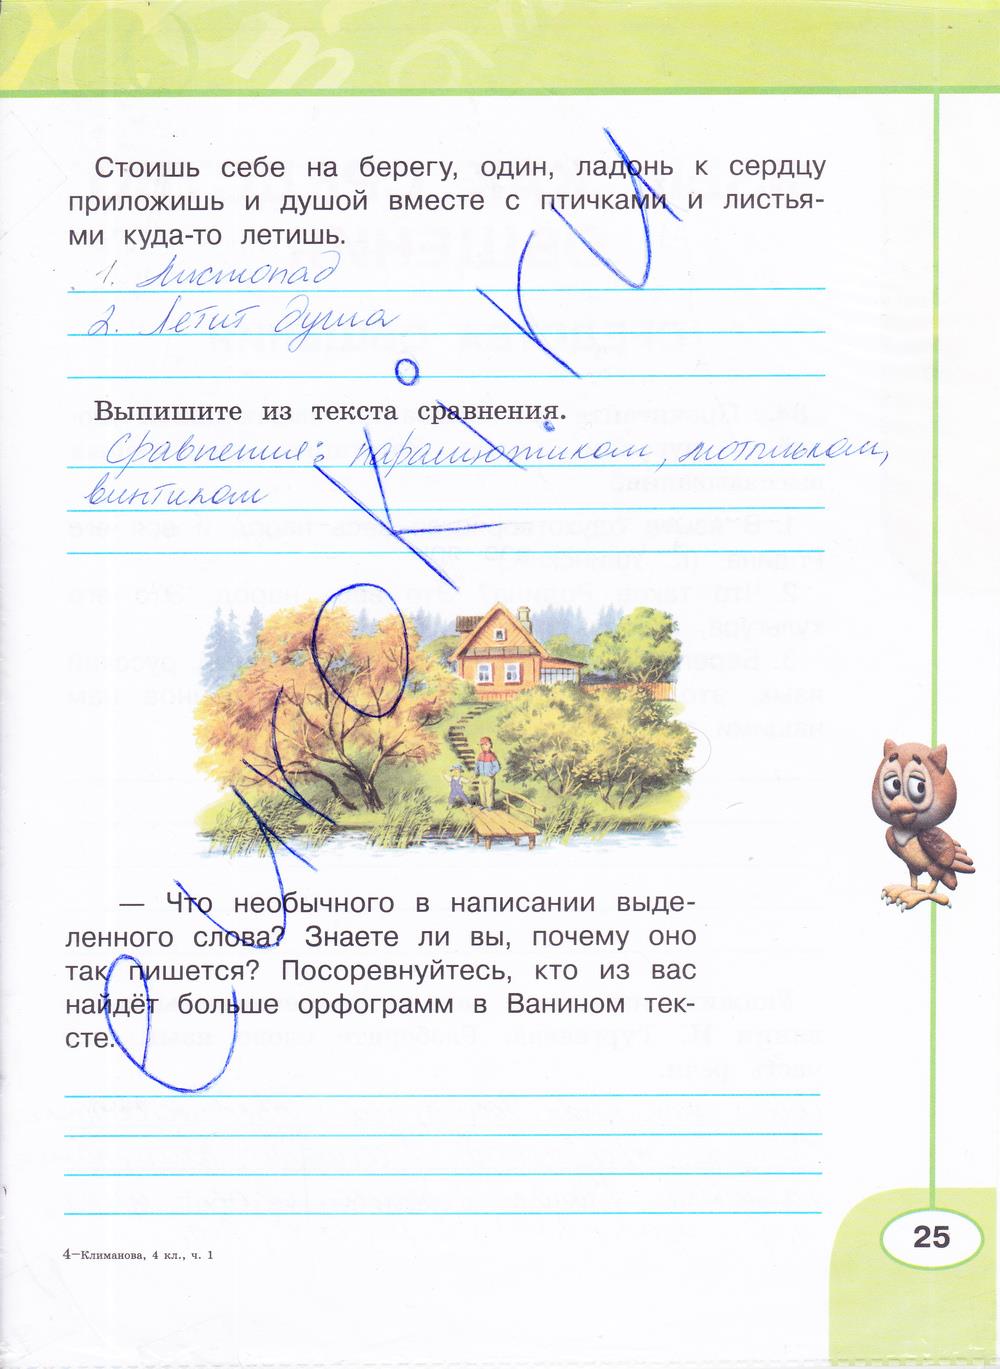 гдз 4 класс рабочая тетрадь часть 1 страница 25 русский язык Климанова, Бабушкина